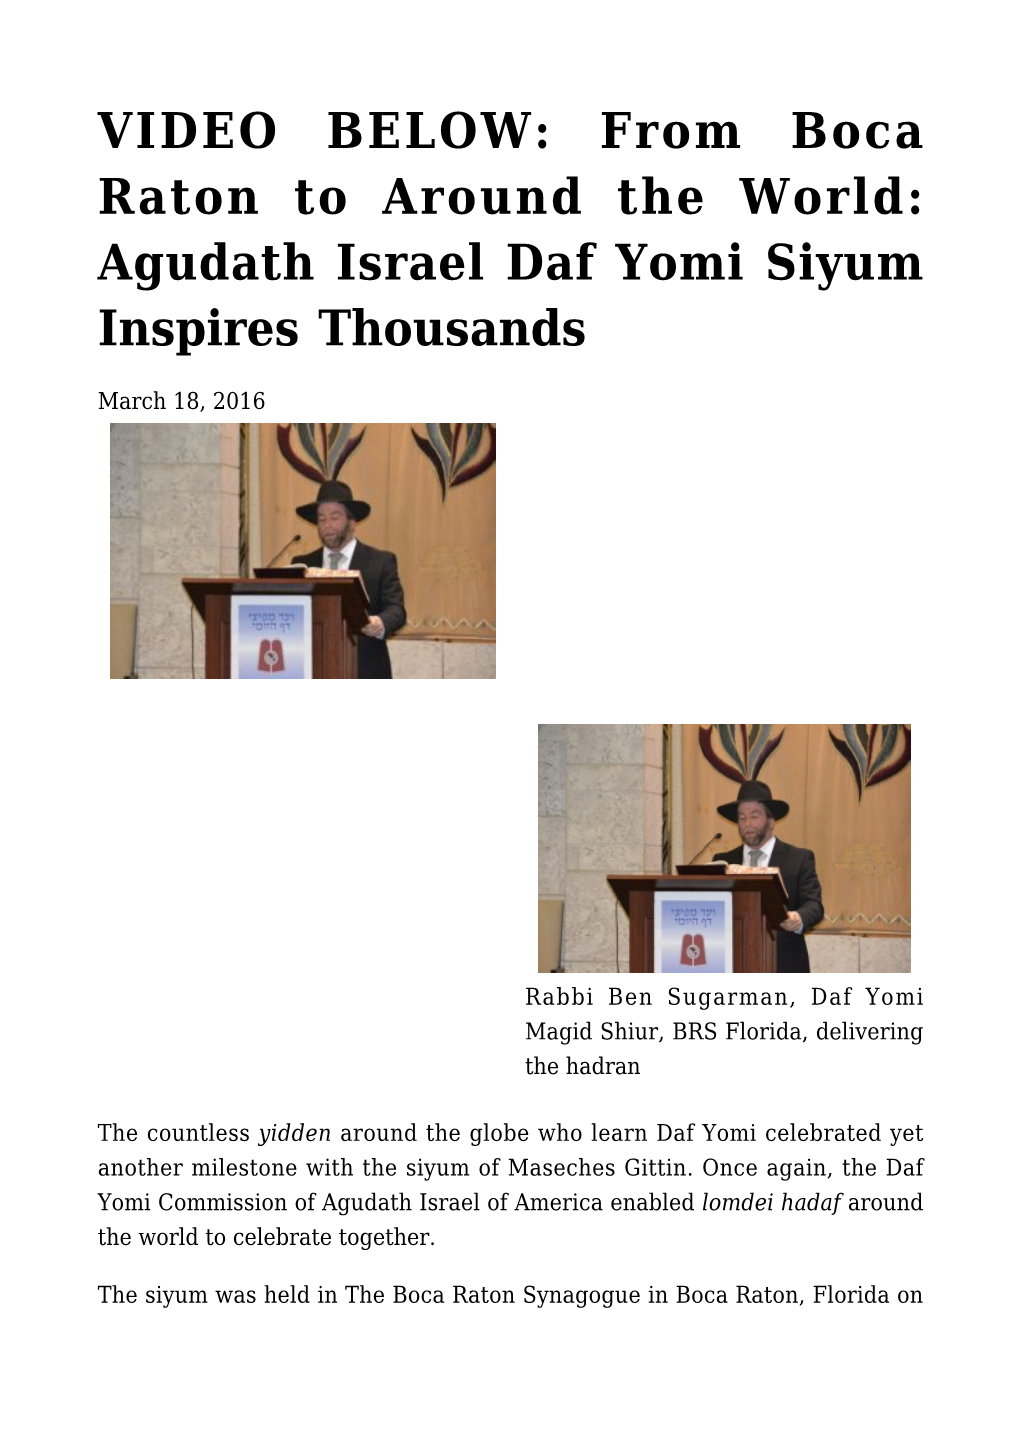 Agudath Israel Daf Yomi Siyum Inspires Thousands